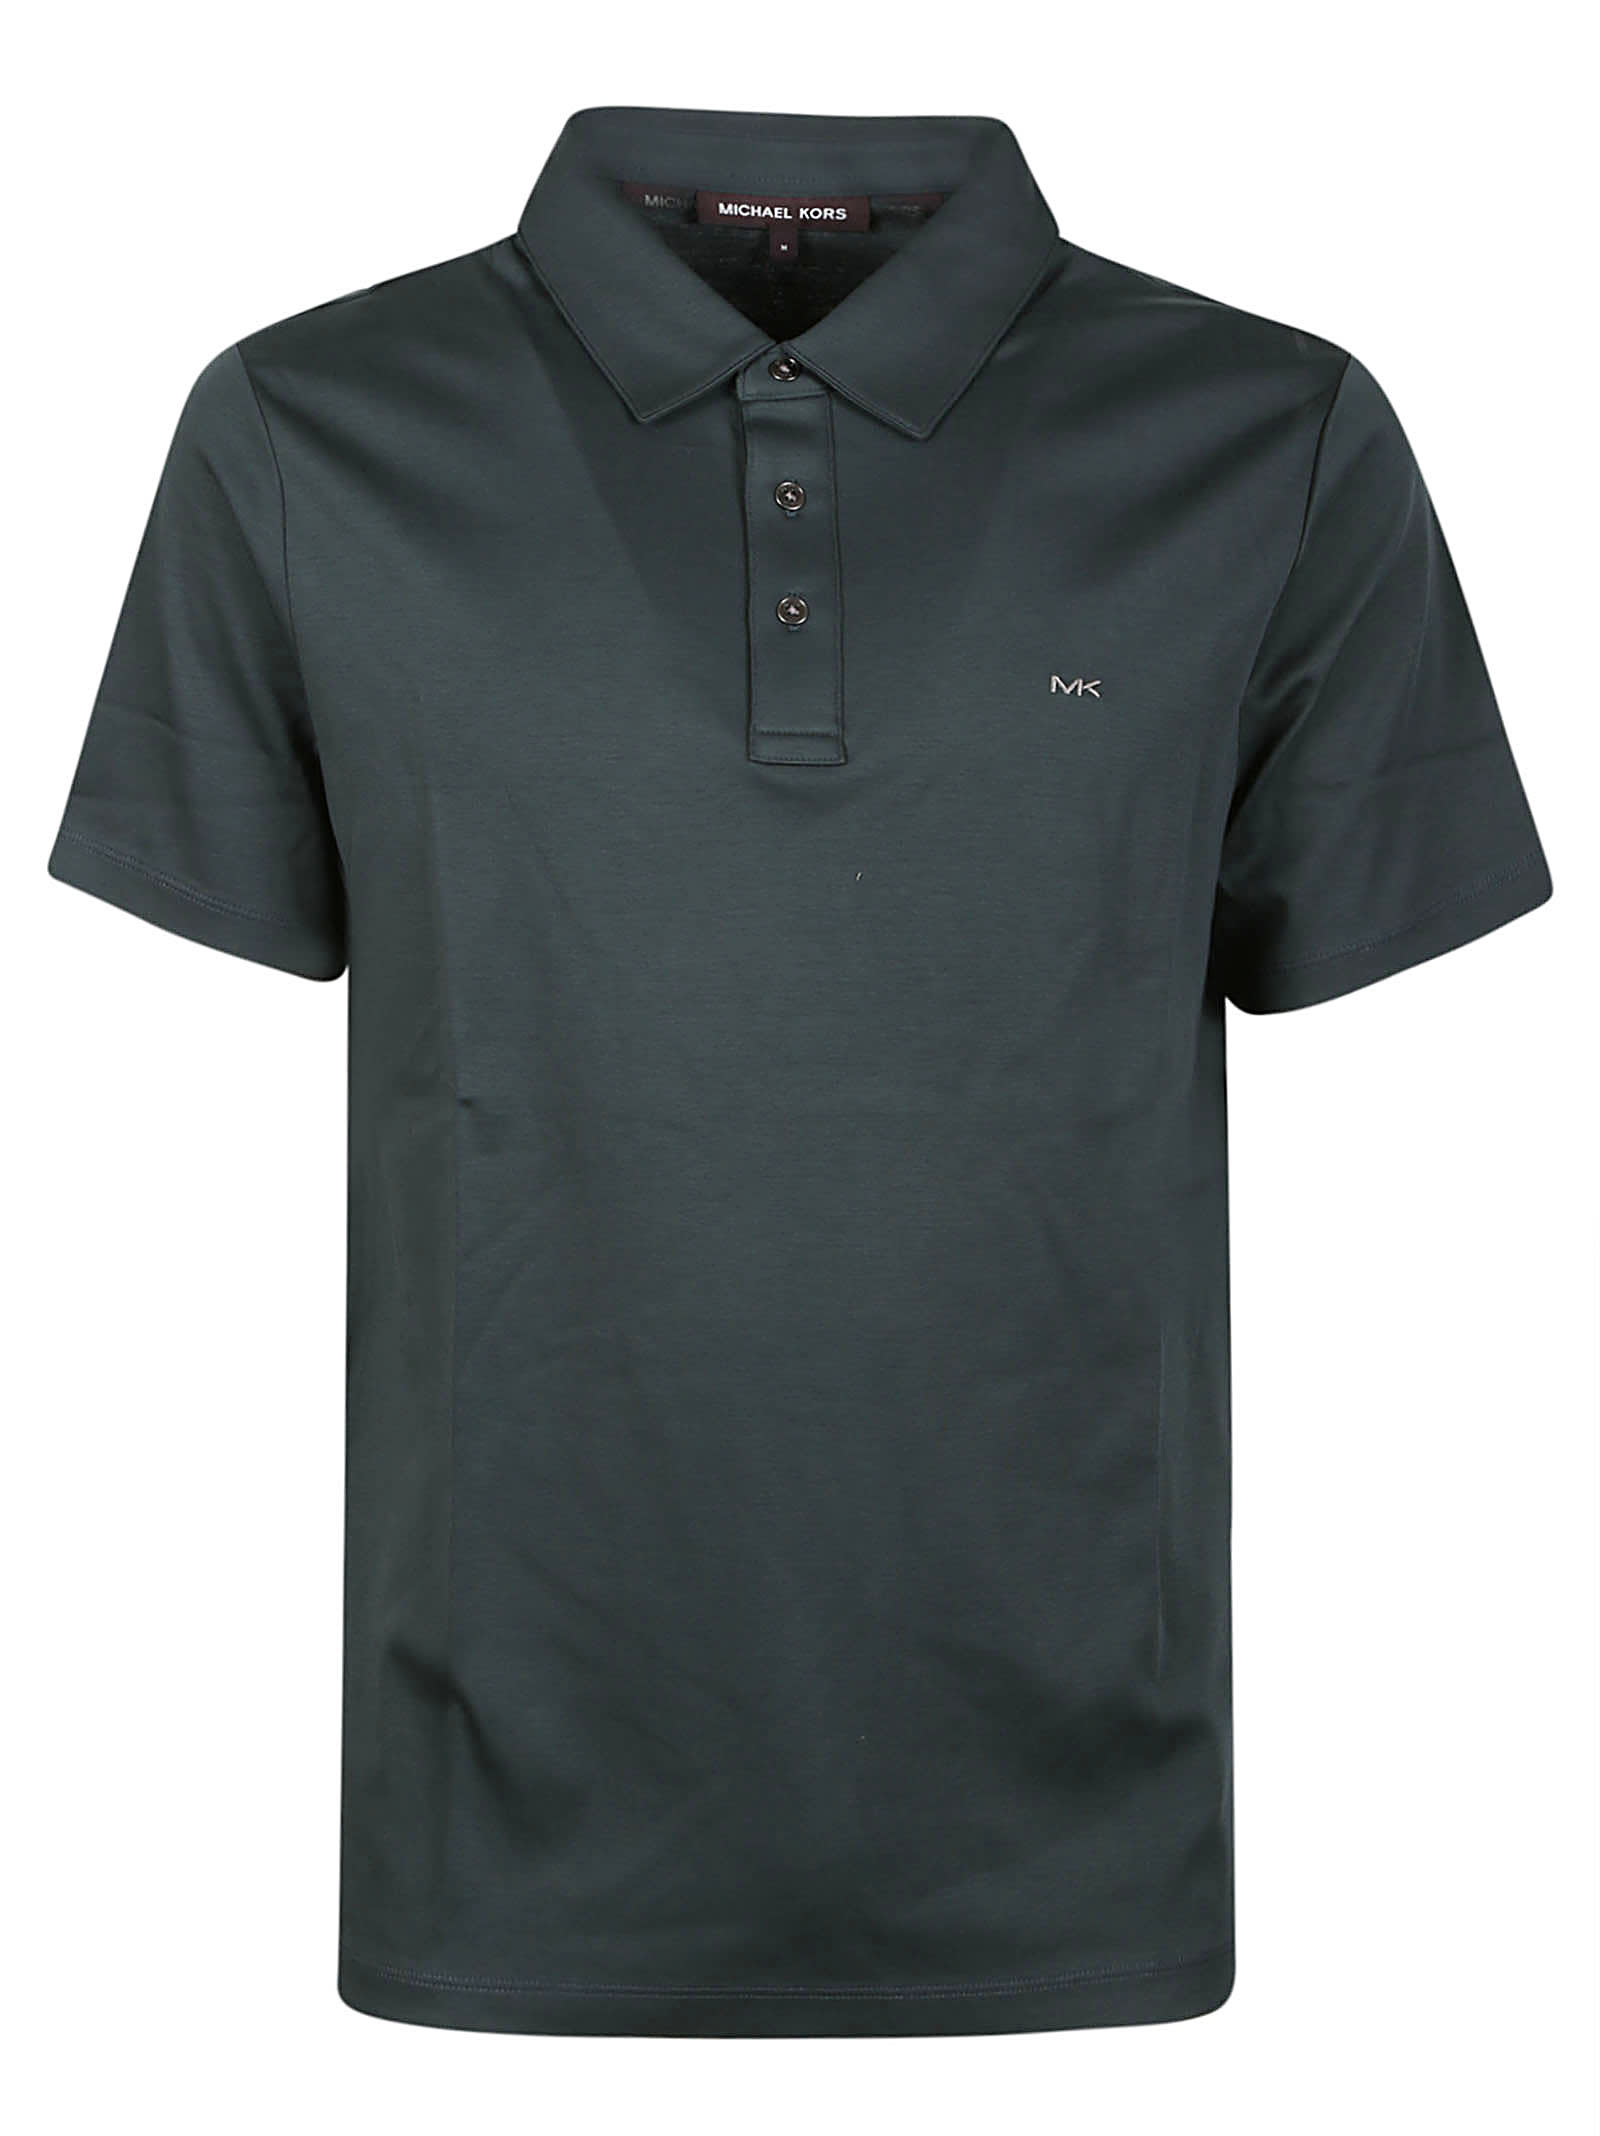 Michael Kors Sleek Polo Shirt In Loden